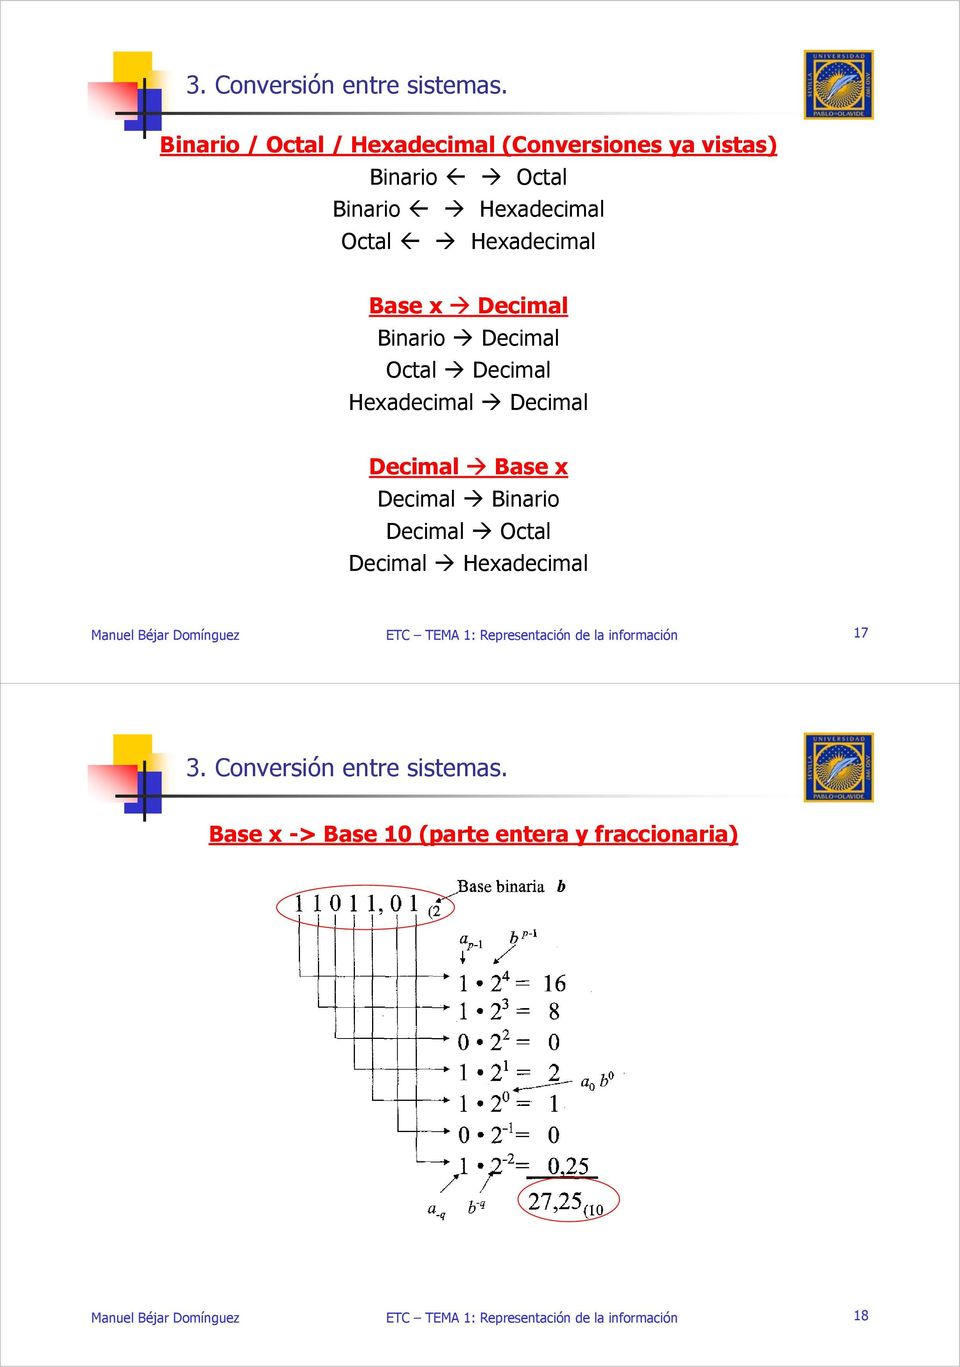 Hexadecimal Octal Hexadecimal Base x Decimal Binario Decimal Octal Decimal Hexadecimal